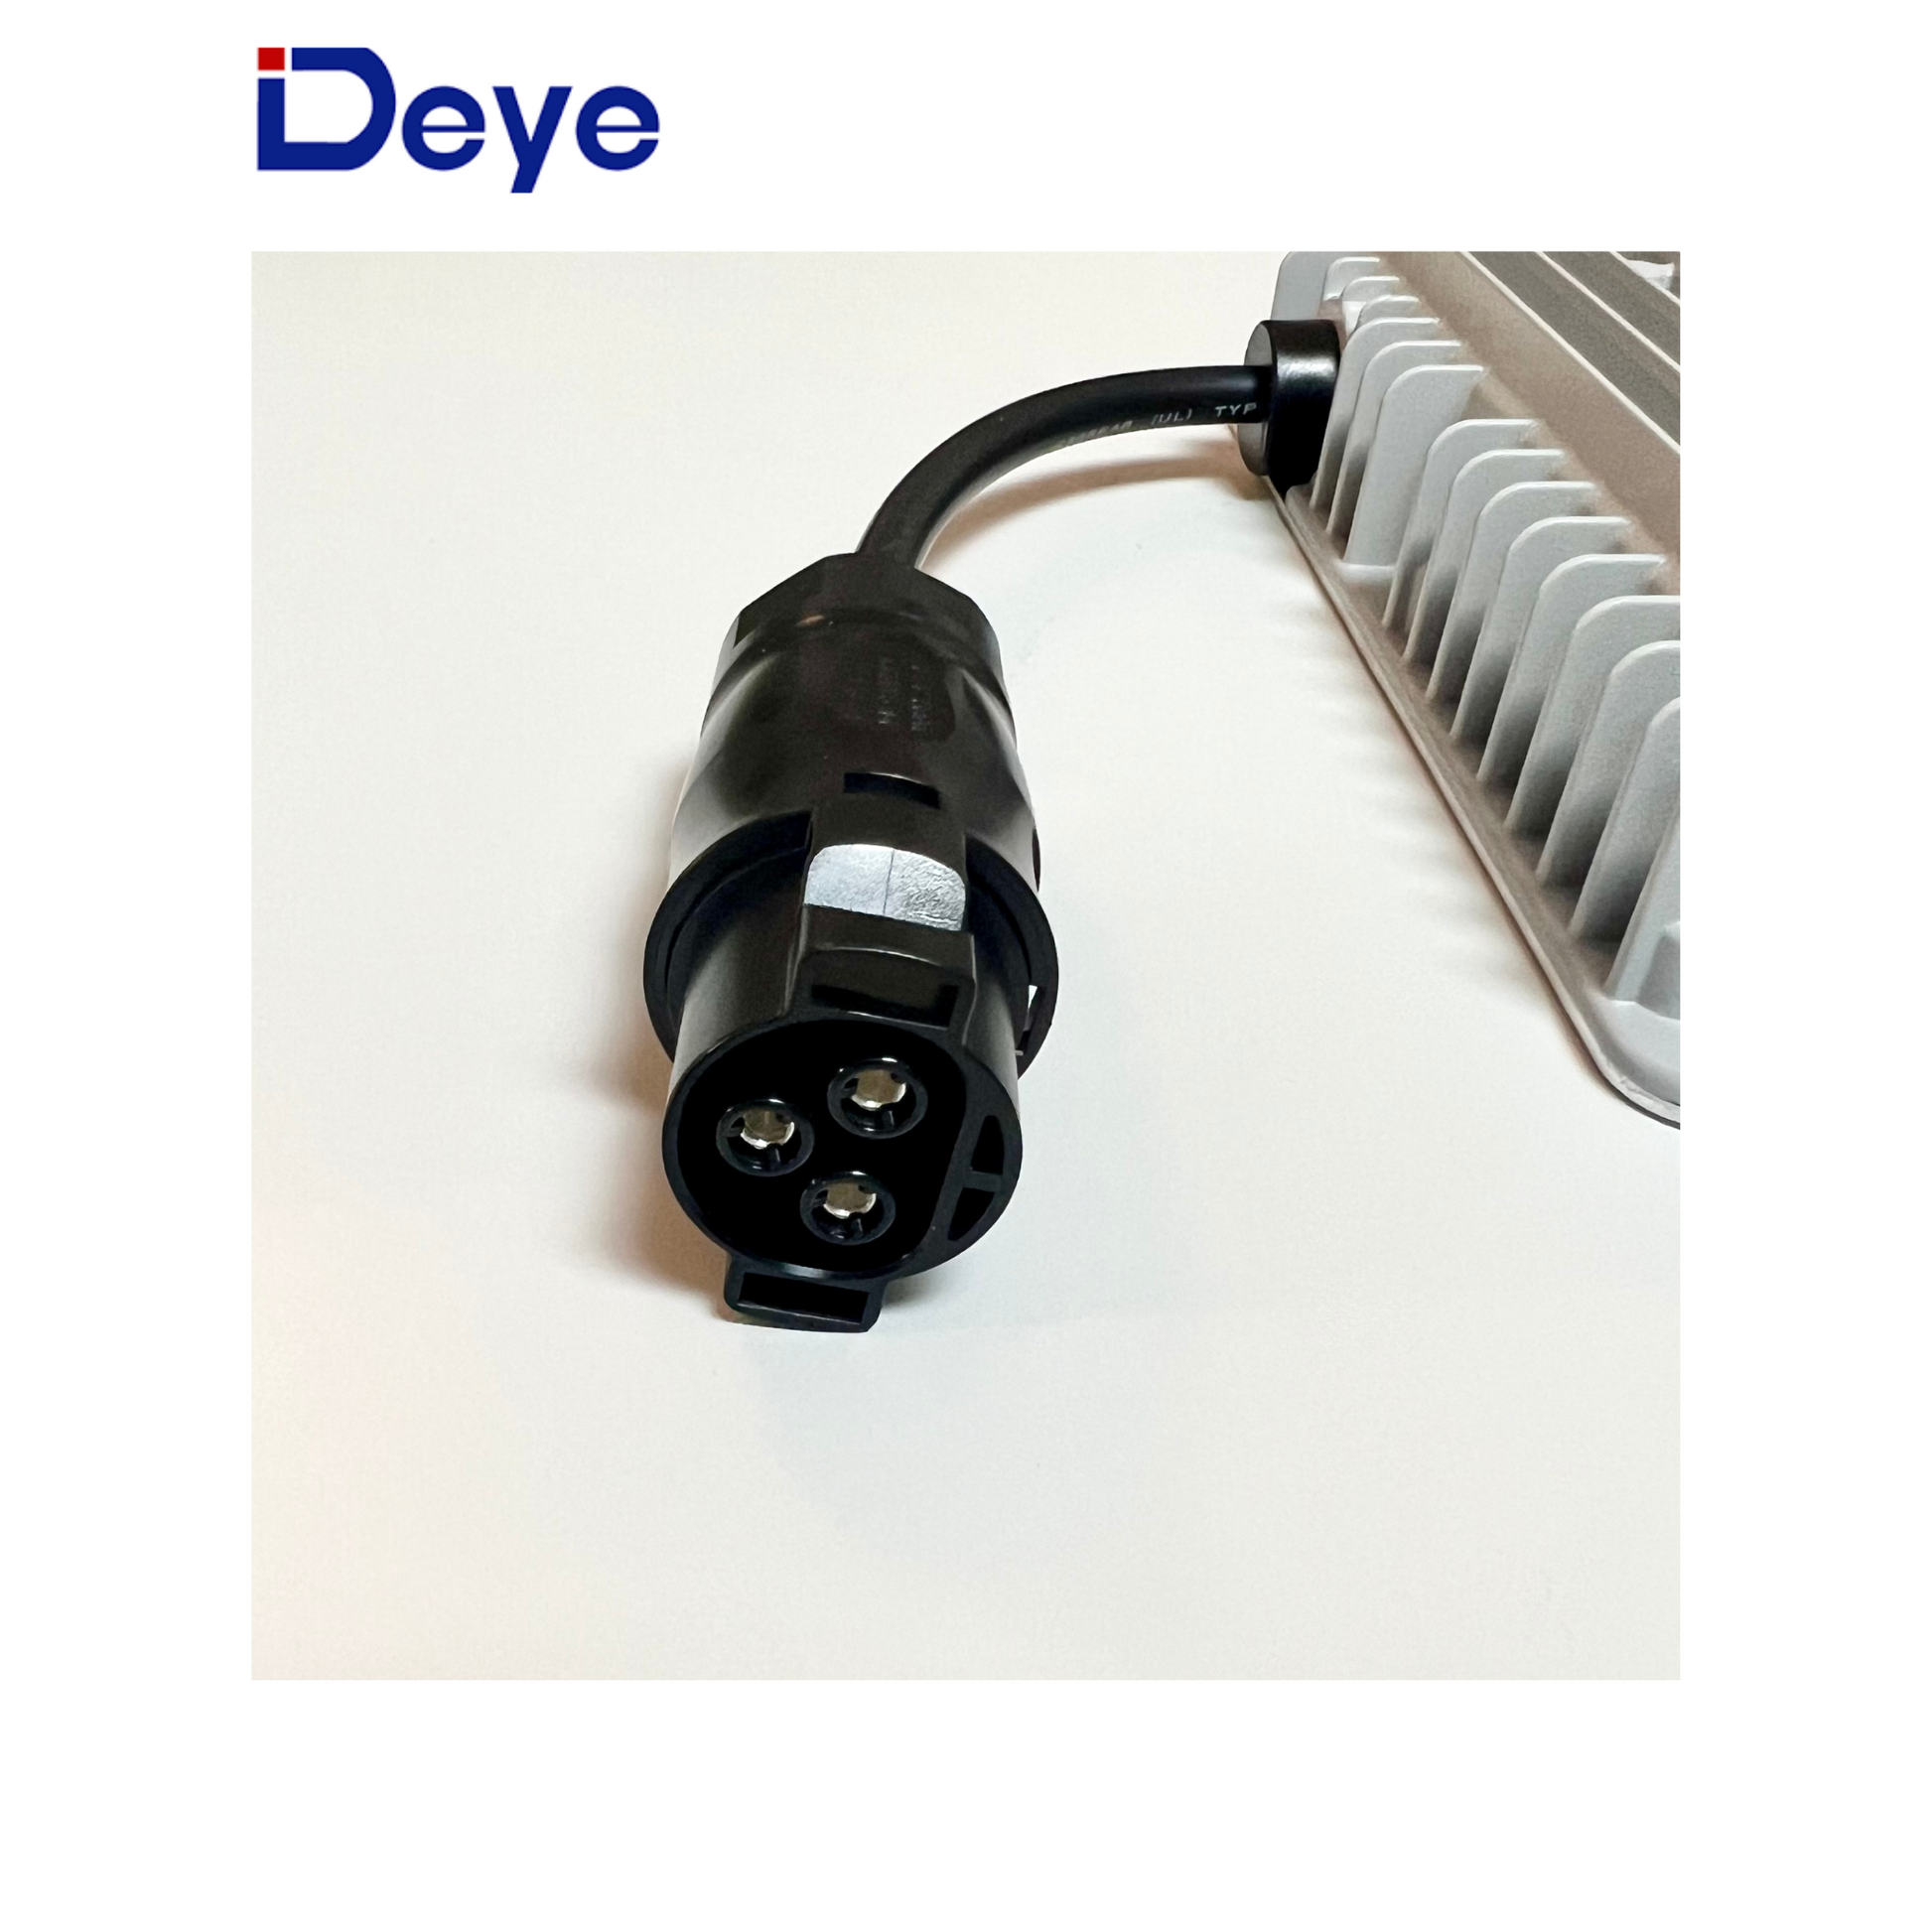 Deye Mikro-Wechselrichter 800W SUN-M80G3-EU-Q0 WIFI mit NS-Schutzgerät